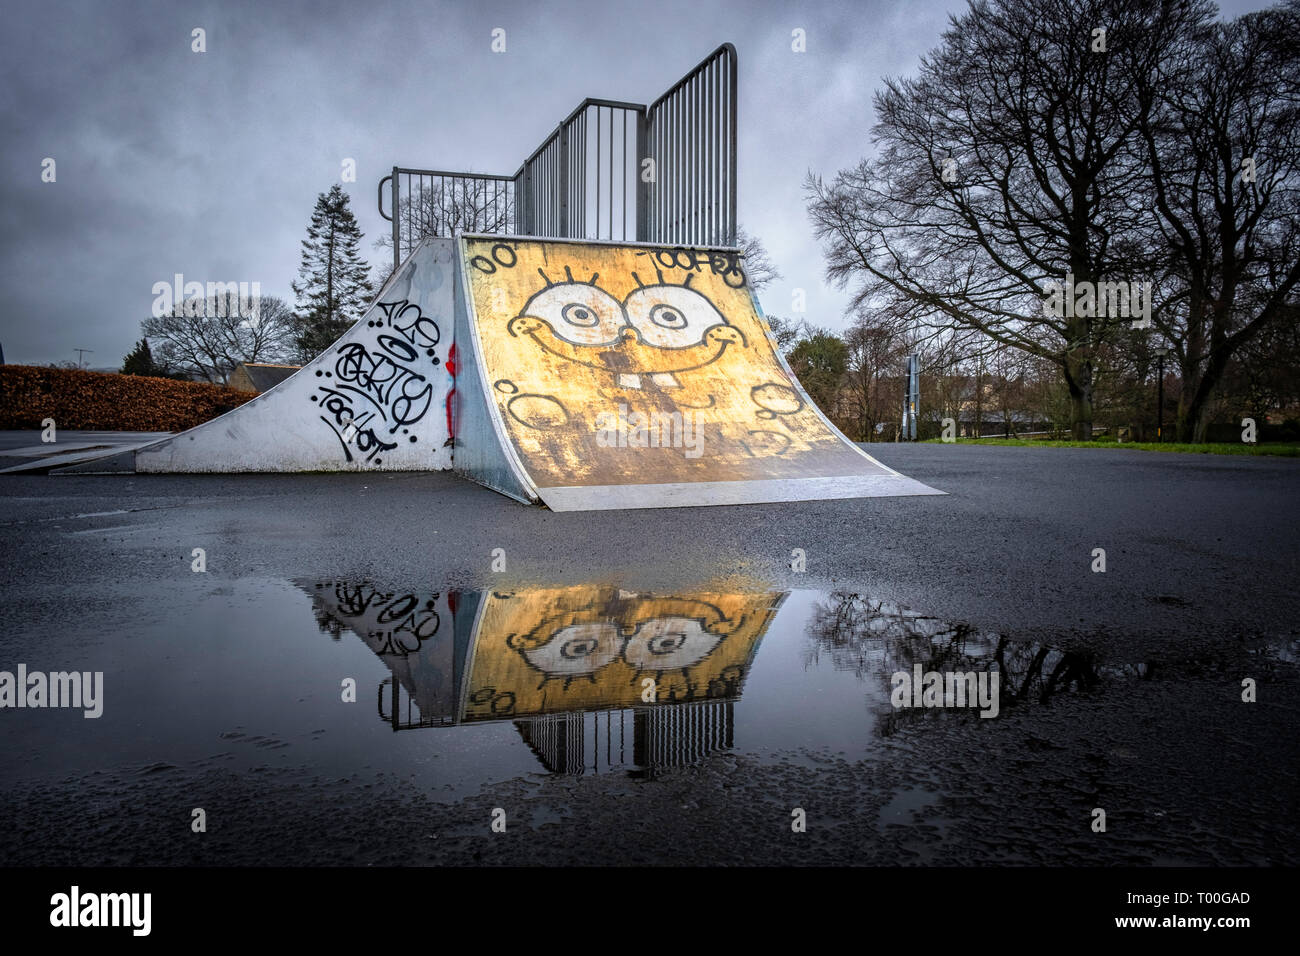 Ist Leer Kinderspielplatz mit Graffiti Gesicht auf eine einsame Skateboard Rampe in Pfütze in düsteren nasses Wetter wider lackiert Stockfoto